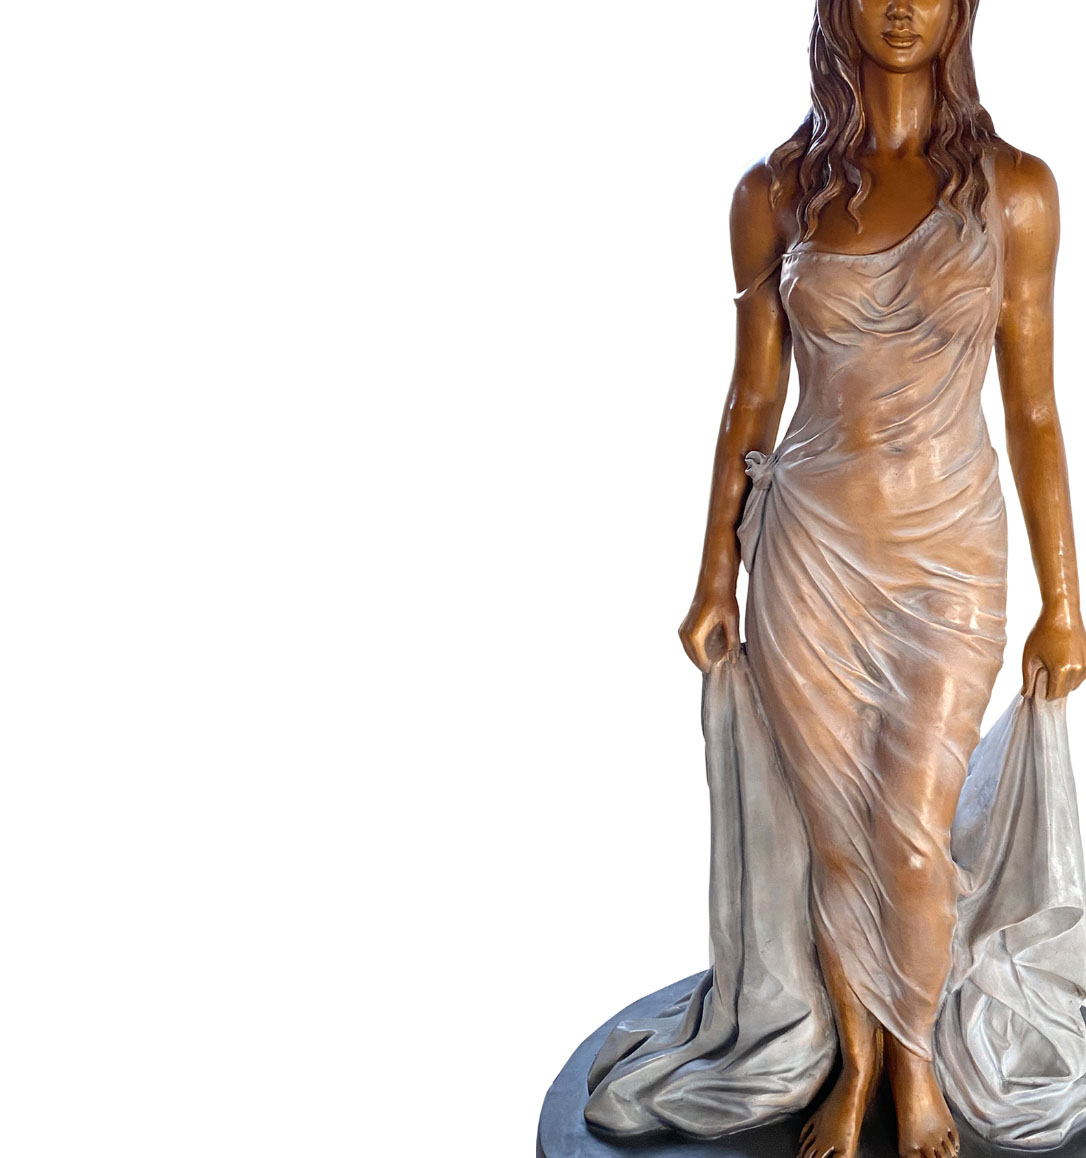 Modern art sculpture, modern statue sculpture, bronze statue of women wearing transparent skirt